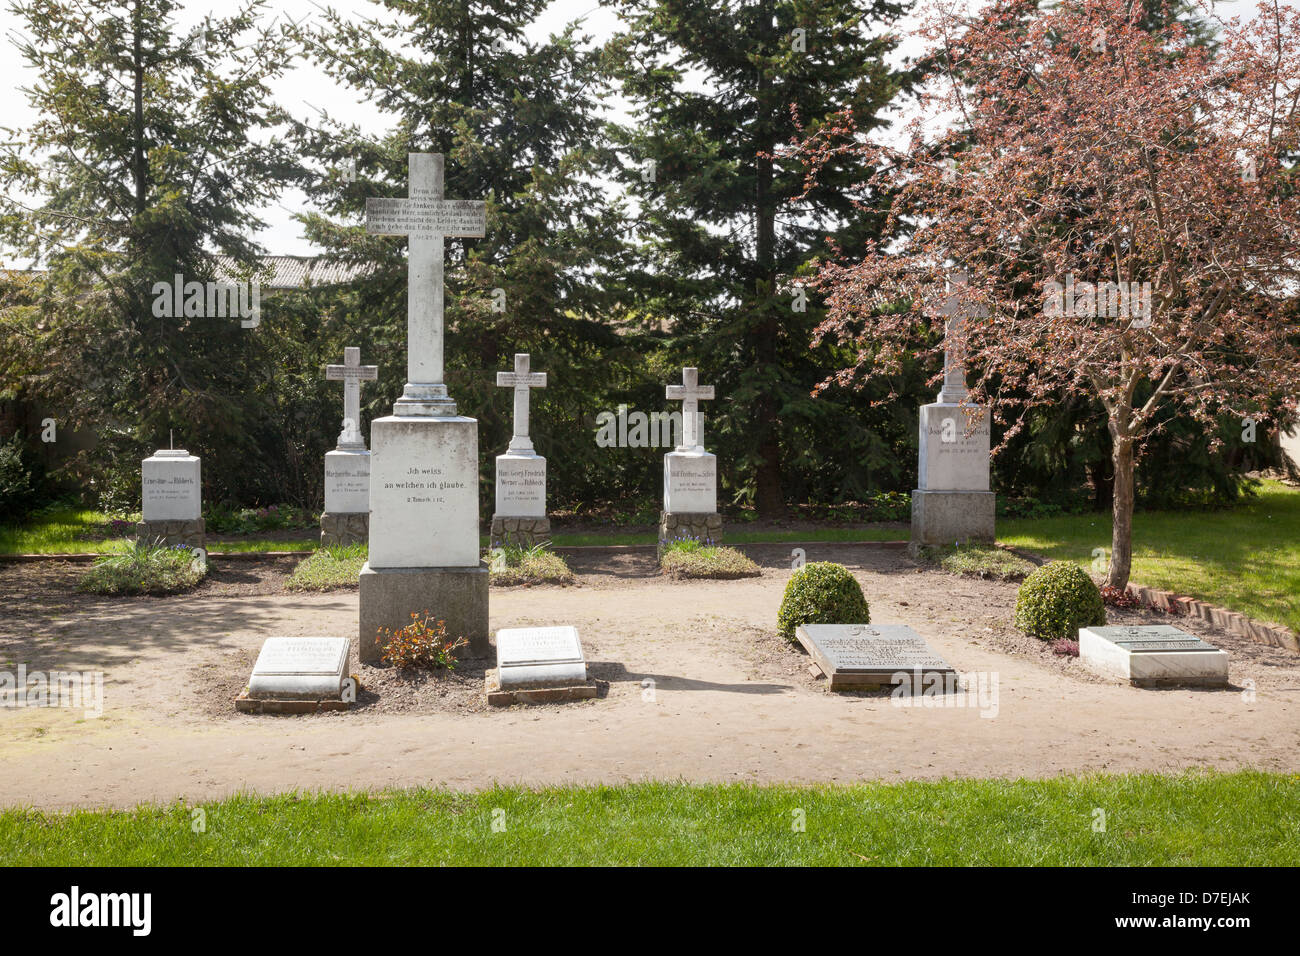 Family von Ribbeck graveyard, Ribbeck, Havelland, Brandenburg, Germany Stock Photo